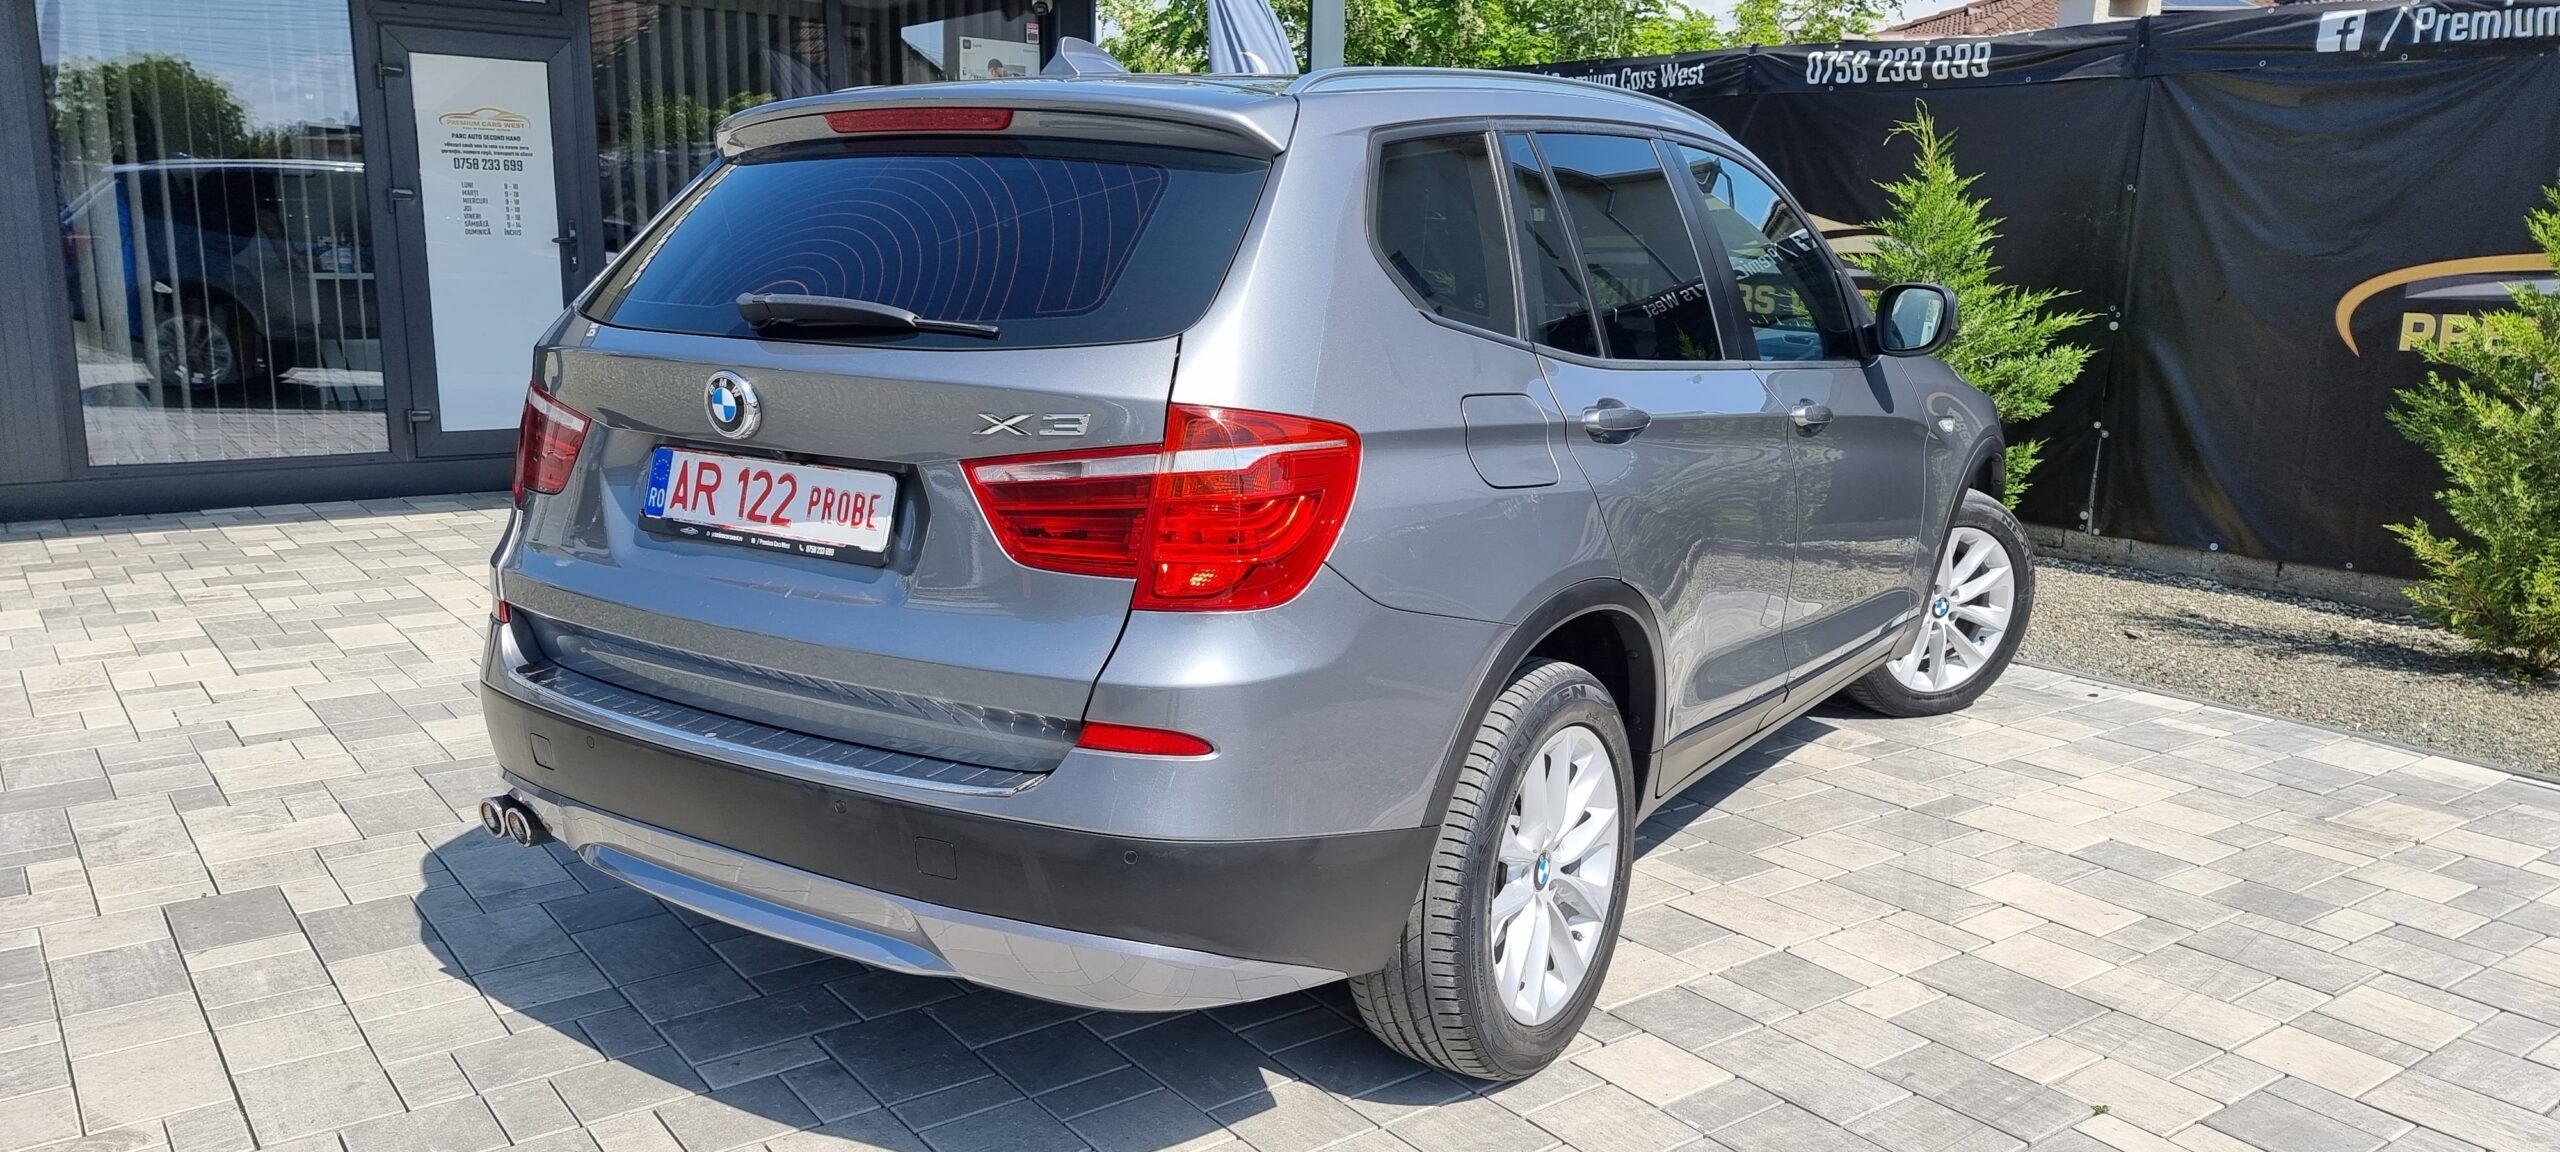 BMW X3, X DRIVE, 2.0 D, 184 CP, EURO 5, AN 2012